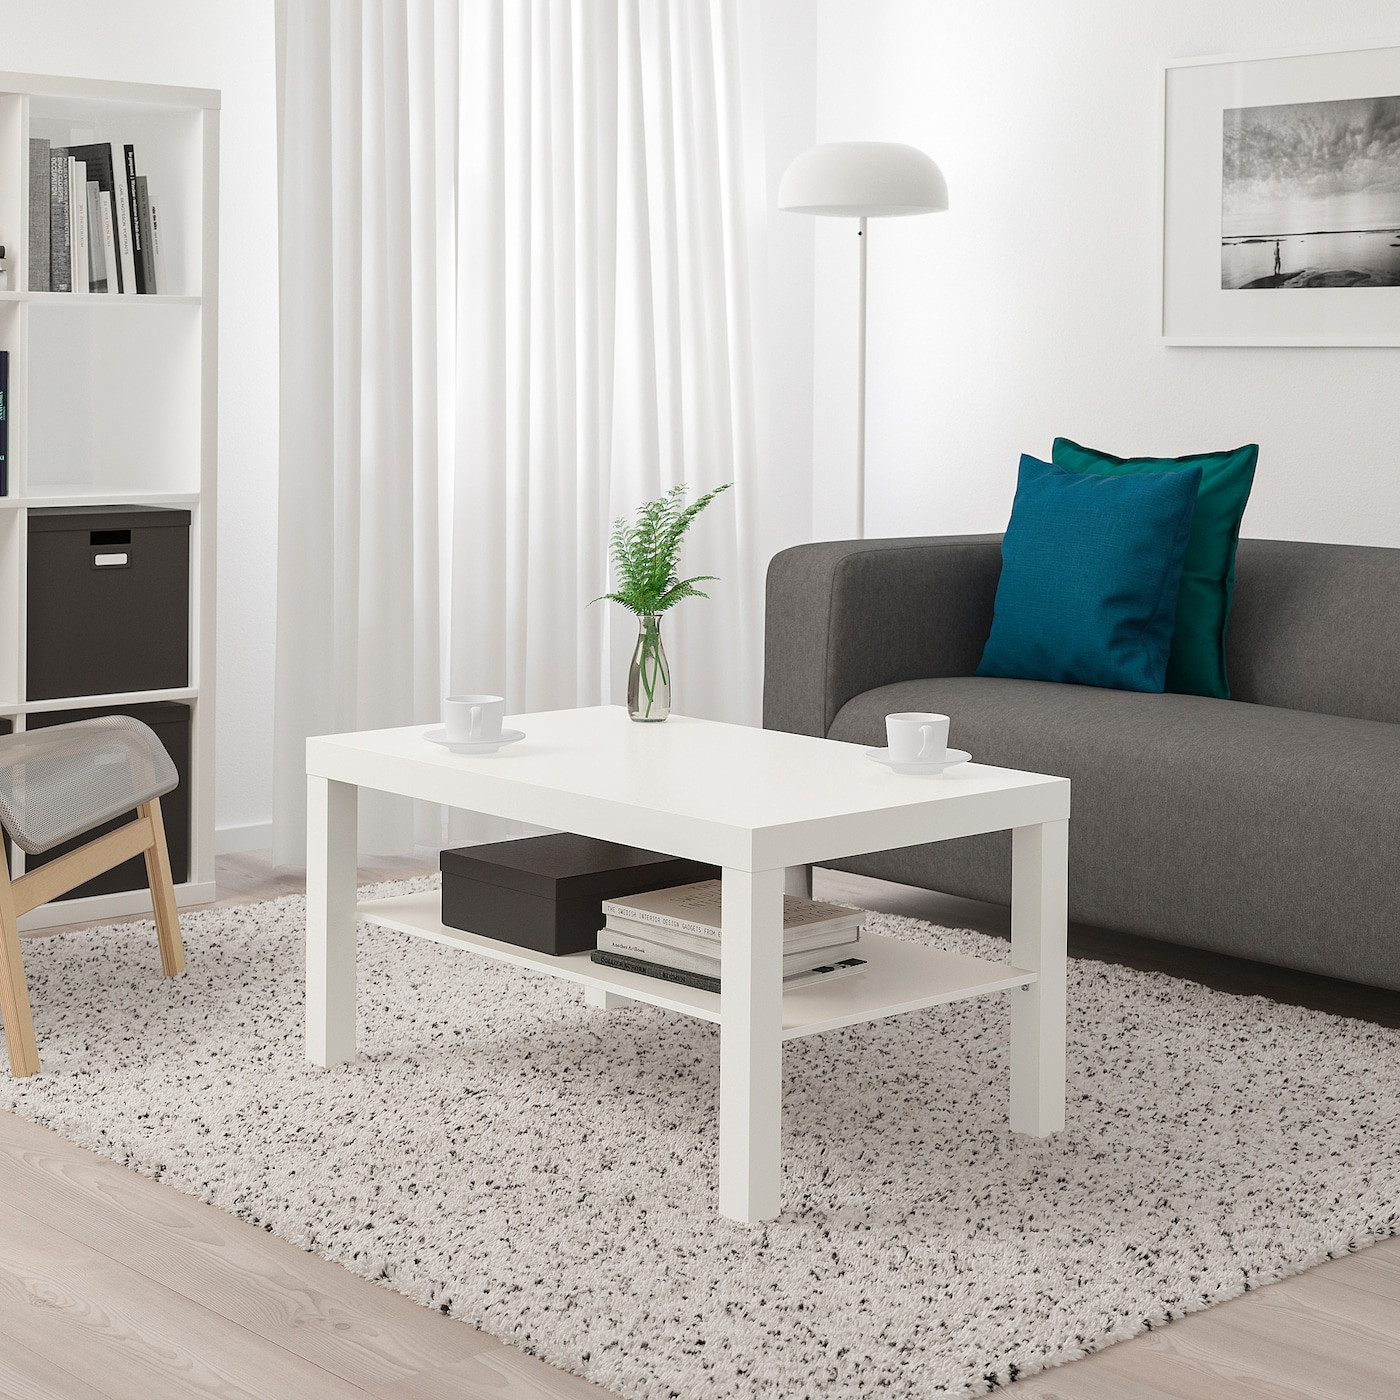 Lack Couchtisch - Weiß 90X55 Cm for Wohnzimmertisch Ikea